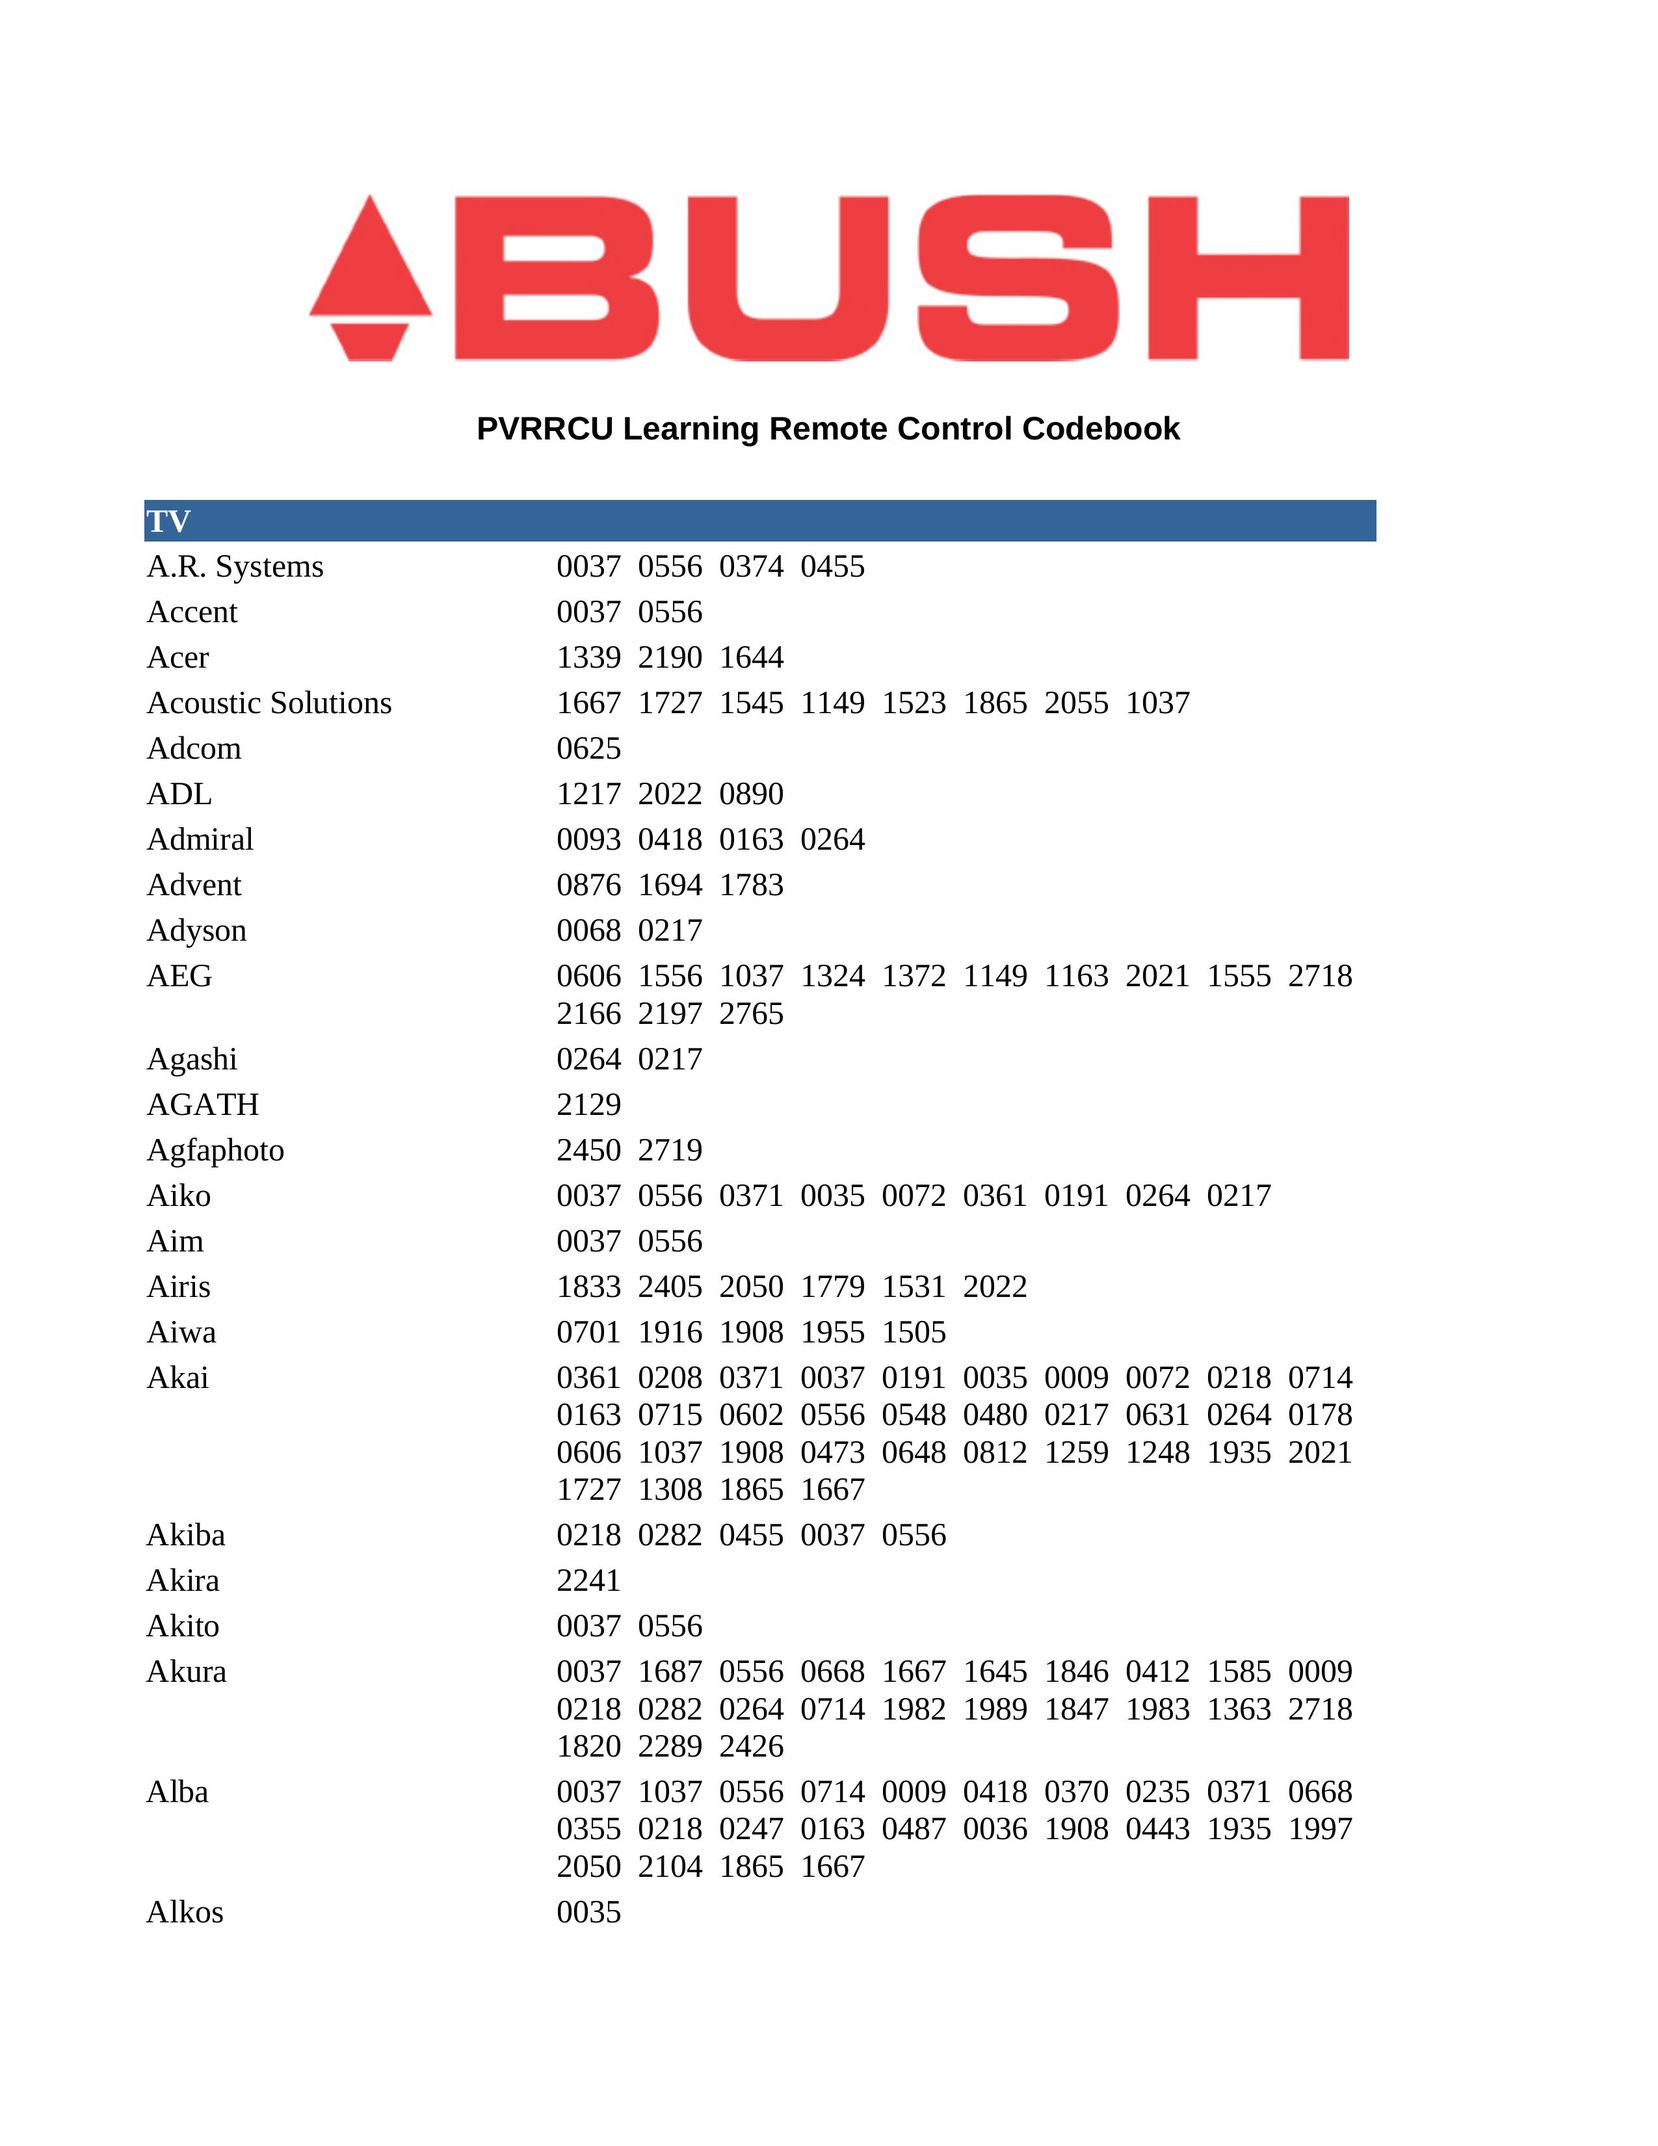 Bush PVRRCU Garage Door Opener User Manual (Page 1)